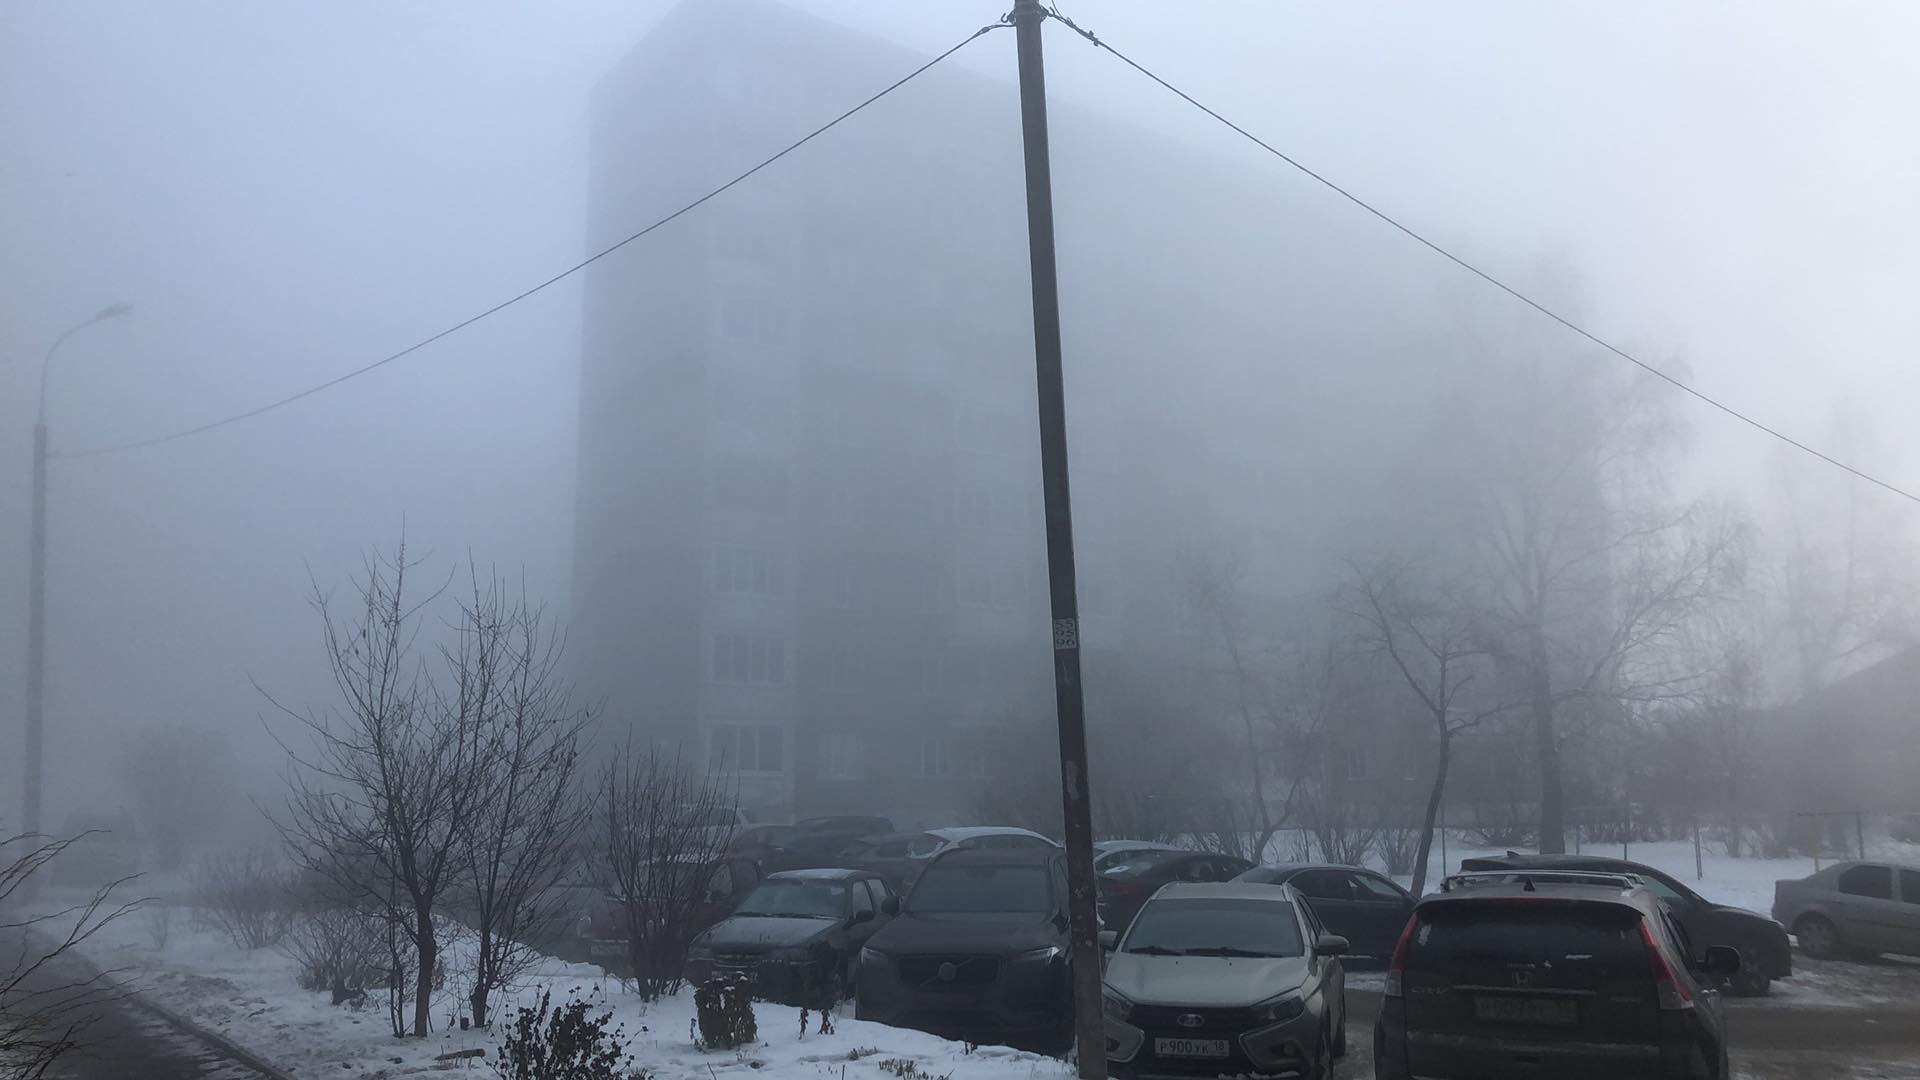 

Фотообзор: аномальный туман окутал Ижевск

